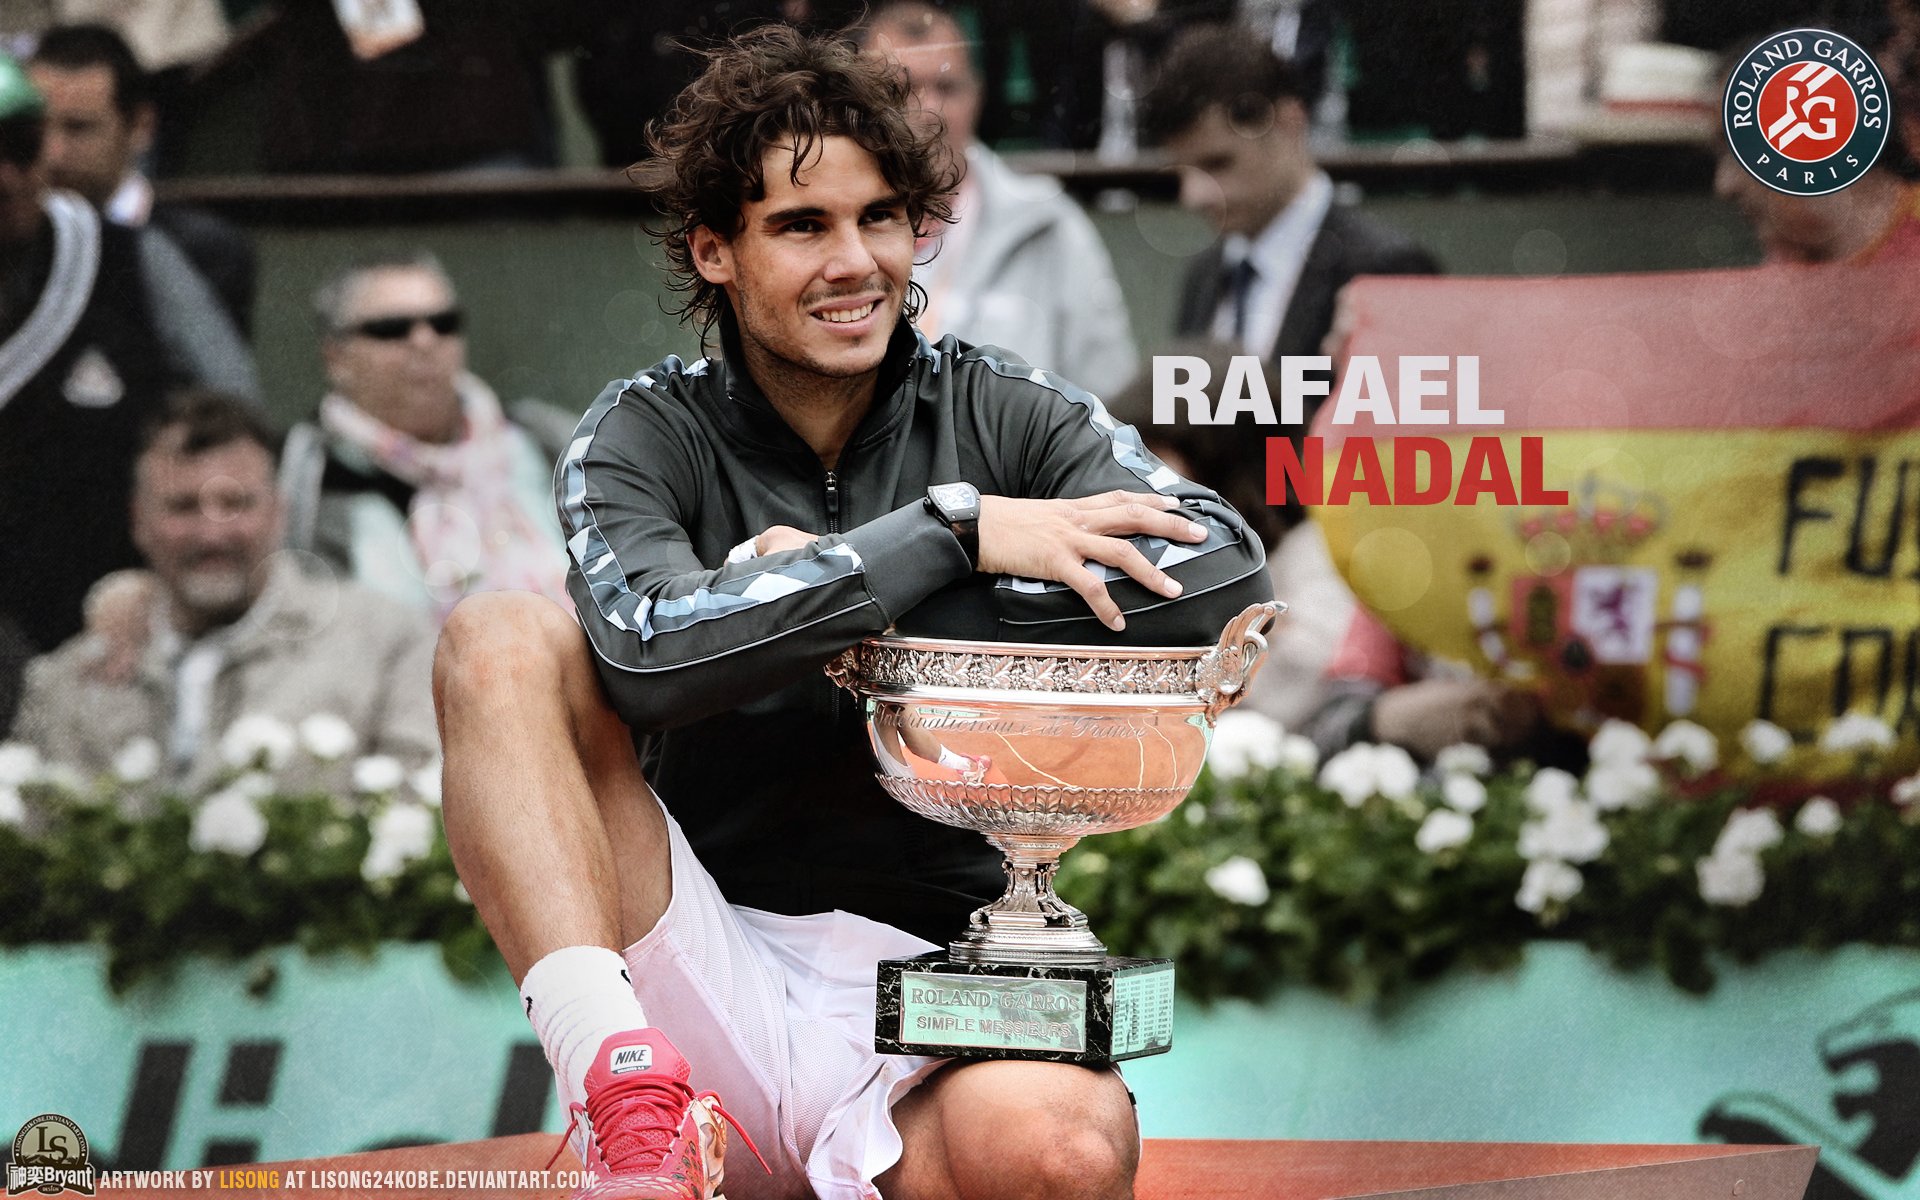 rafael, Nadal, Tennis, Hunk, Spain,  1 Wallpaper